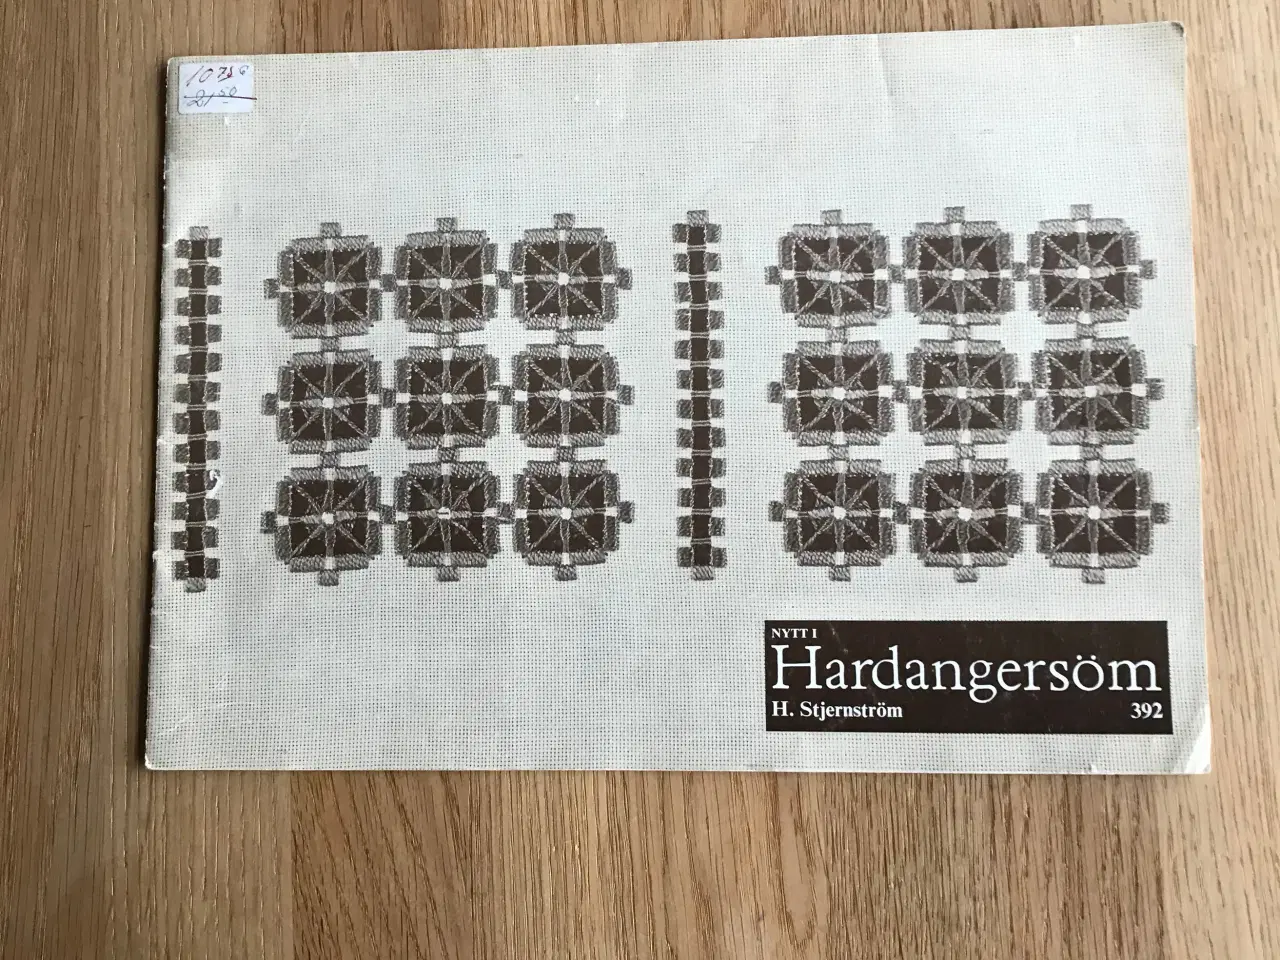 Billede 1 - Nytt i Hardangersöm  af  H. Stjernström